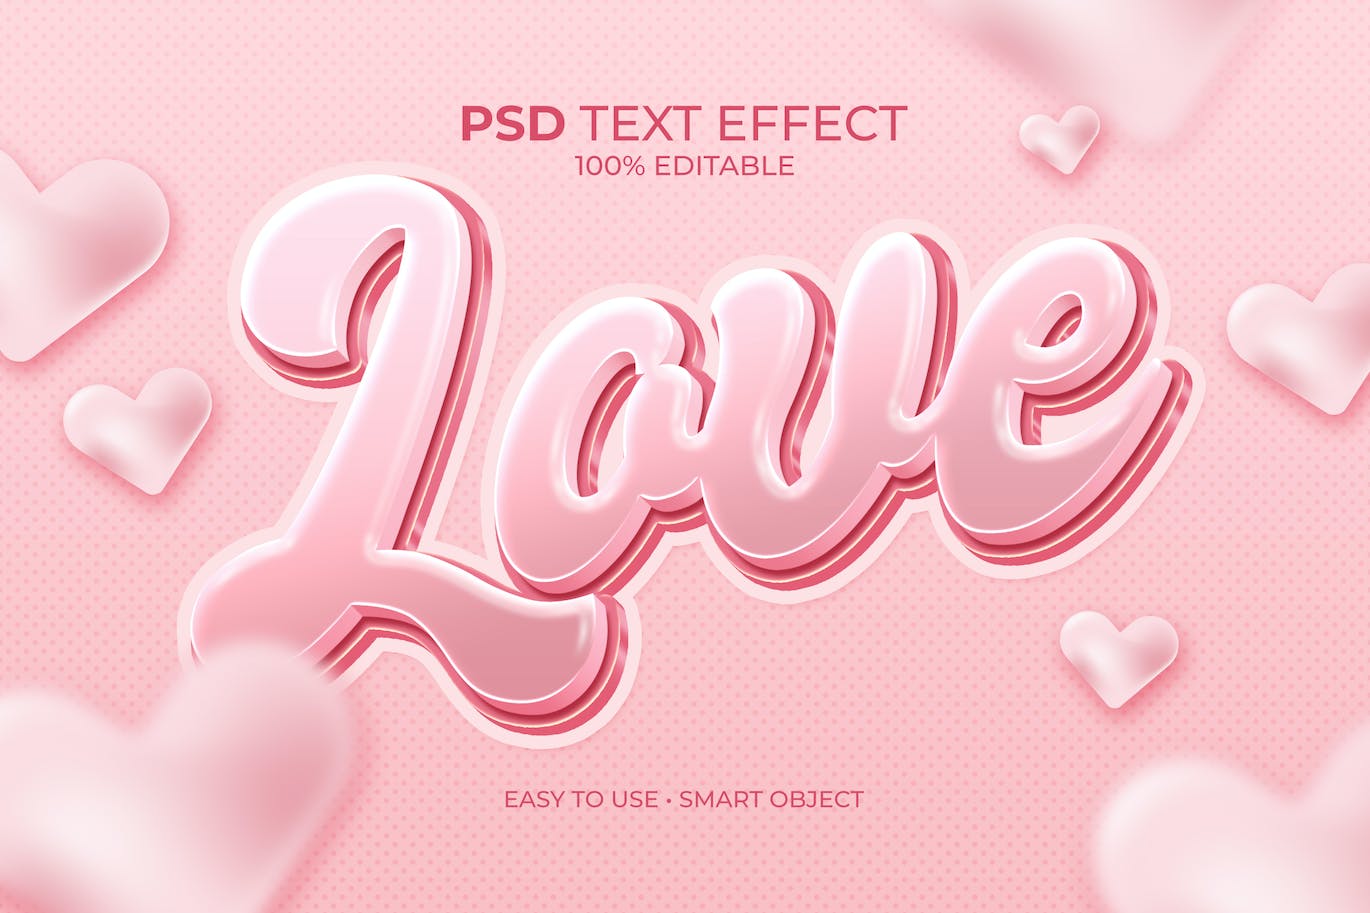 浪漫爱情风格PS图层样式 (PSD)